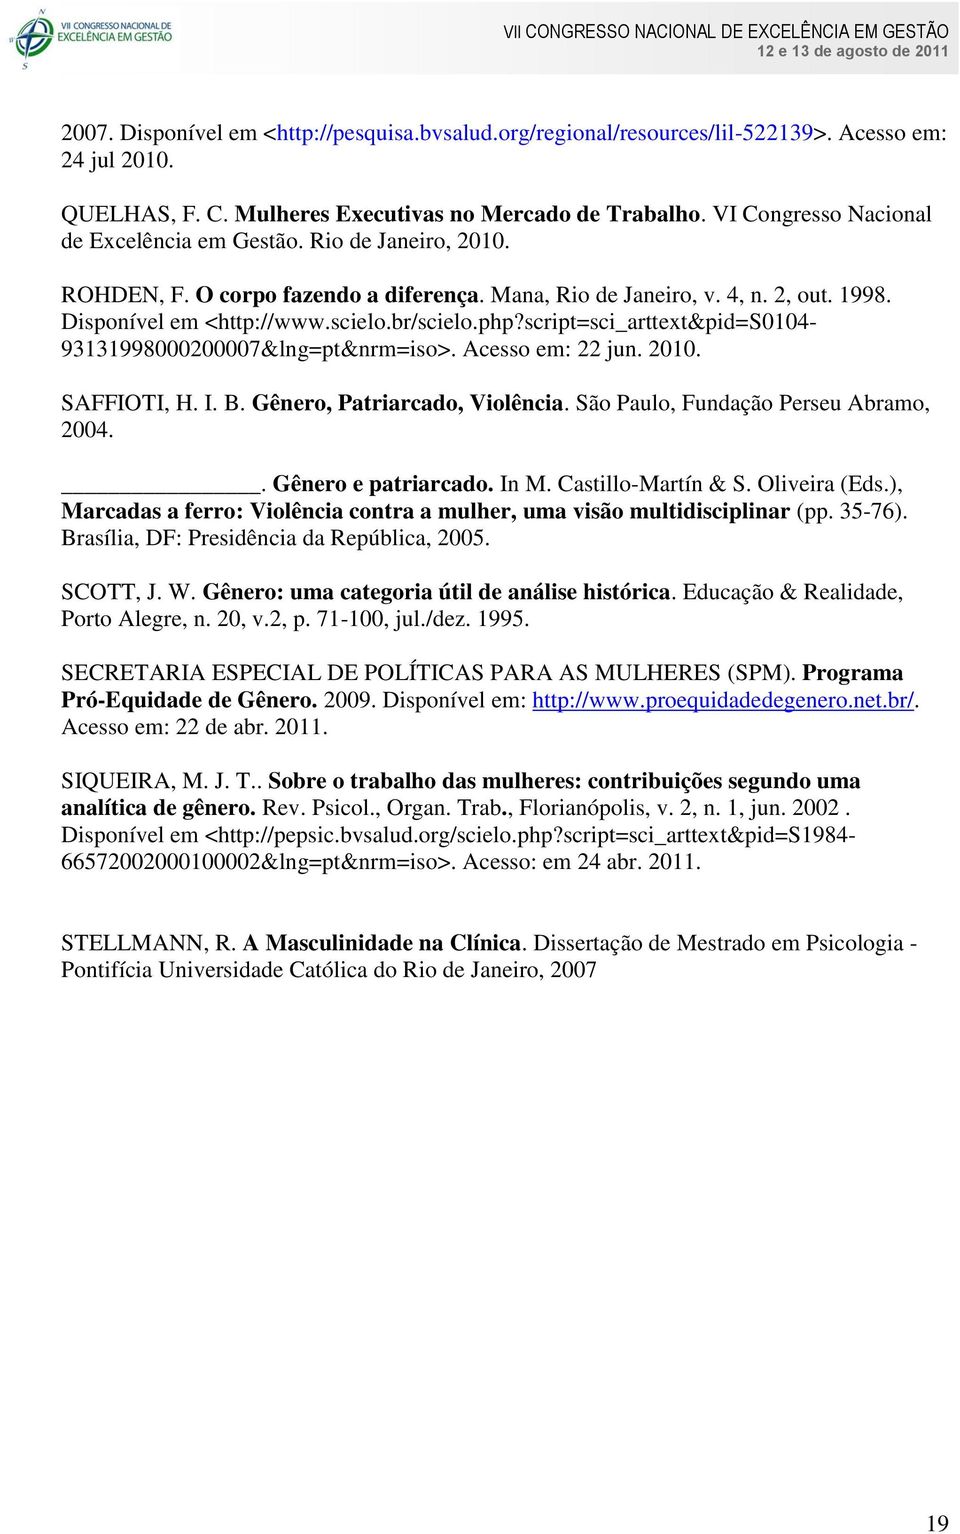 php?script=sci_arttext&pid=s0104-93131998000200007&lng=pt&nrm=iso>. Acesso em: 22 jun. 2010. SAFFIOTI, H. I. B. Gênero, Patriarcado, Violência. São Paulo, Fundação Perseu Abramo, 2004.